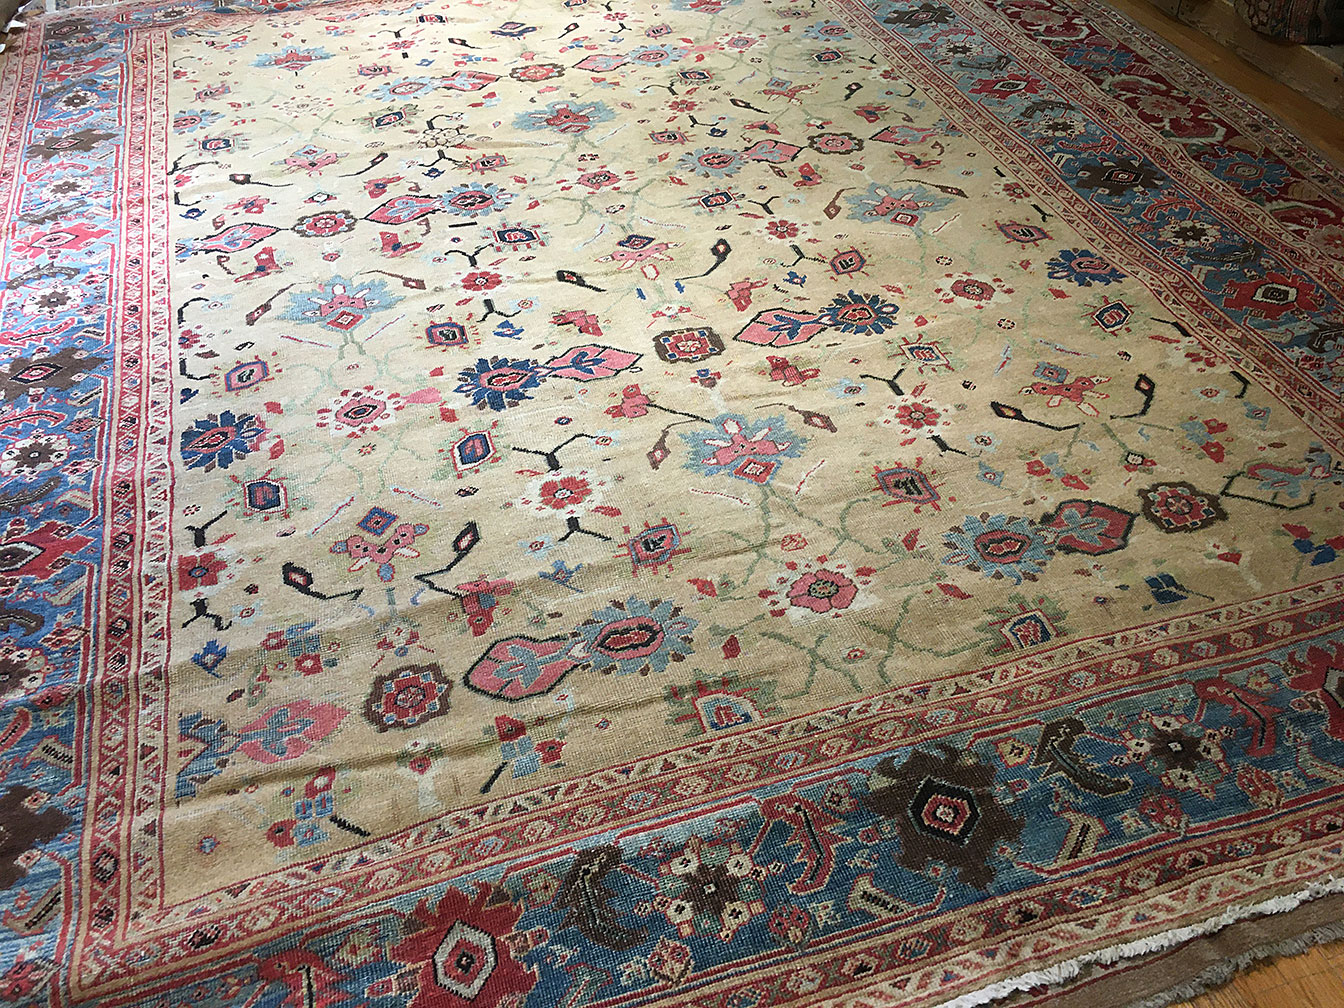 Antique mahal Carpet - # 55303